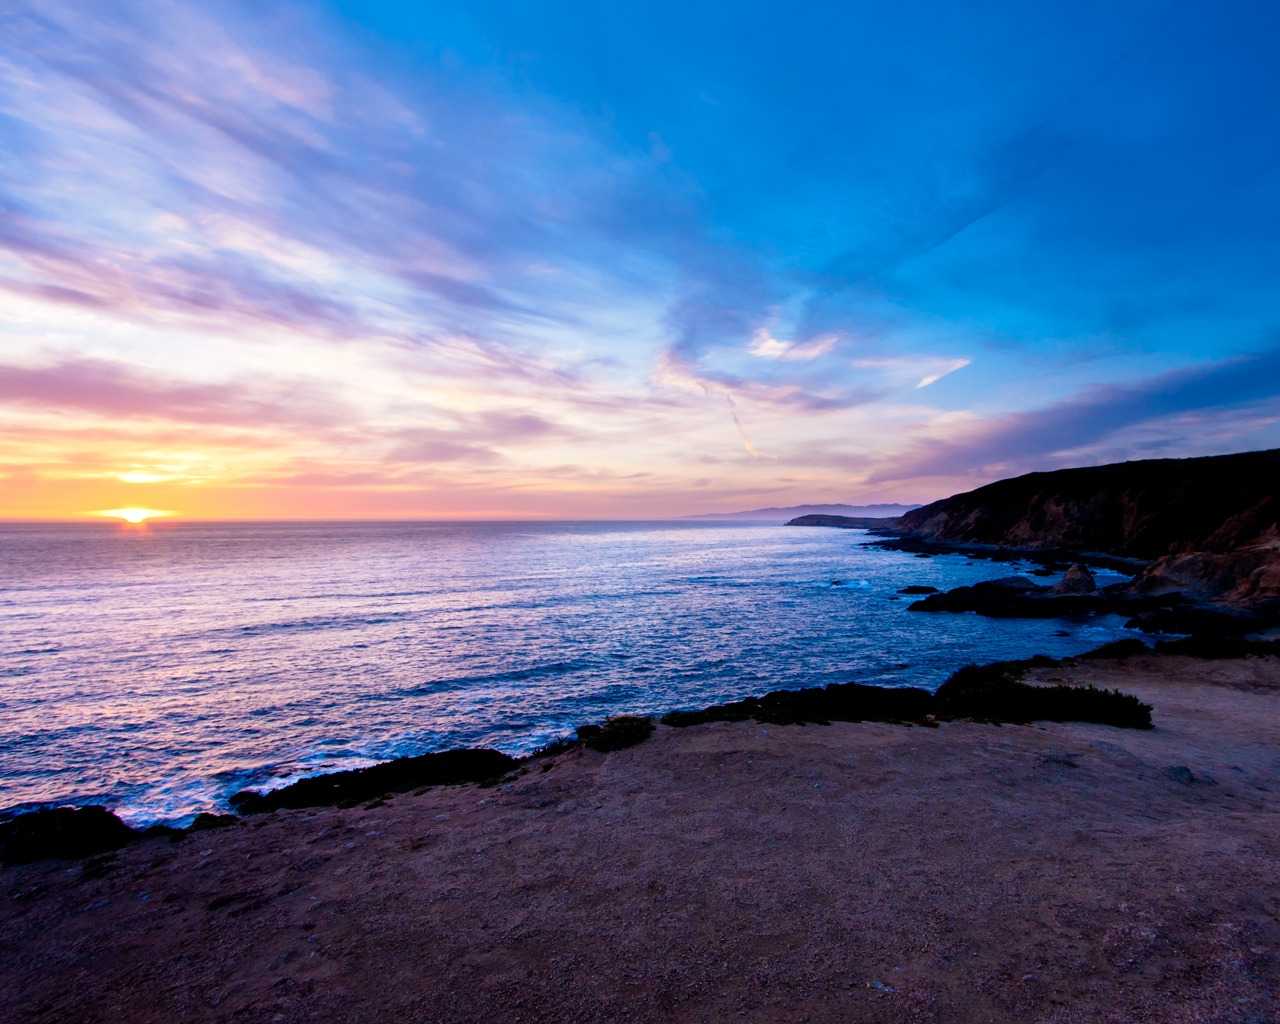 Bodega Head Sunset for 1280 x 1024 resolution